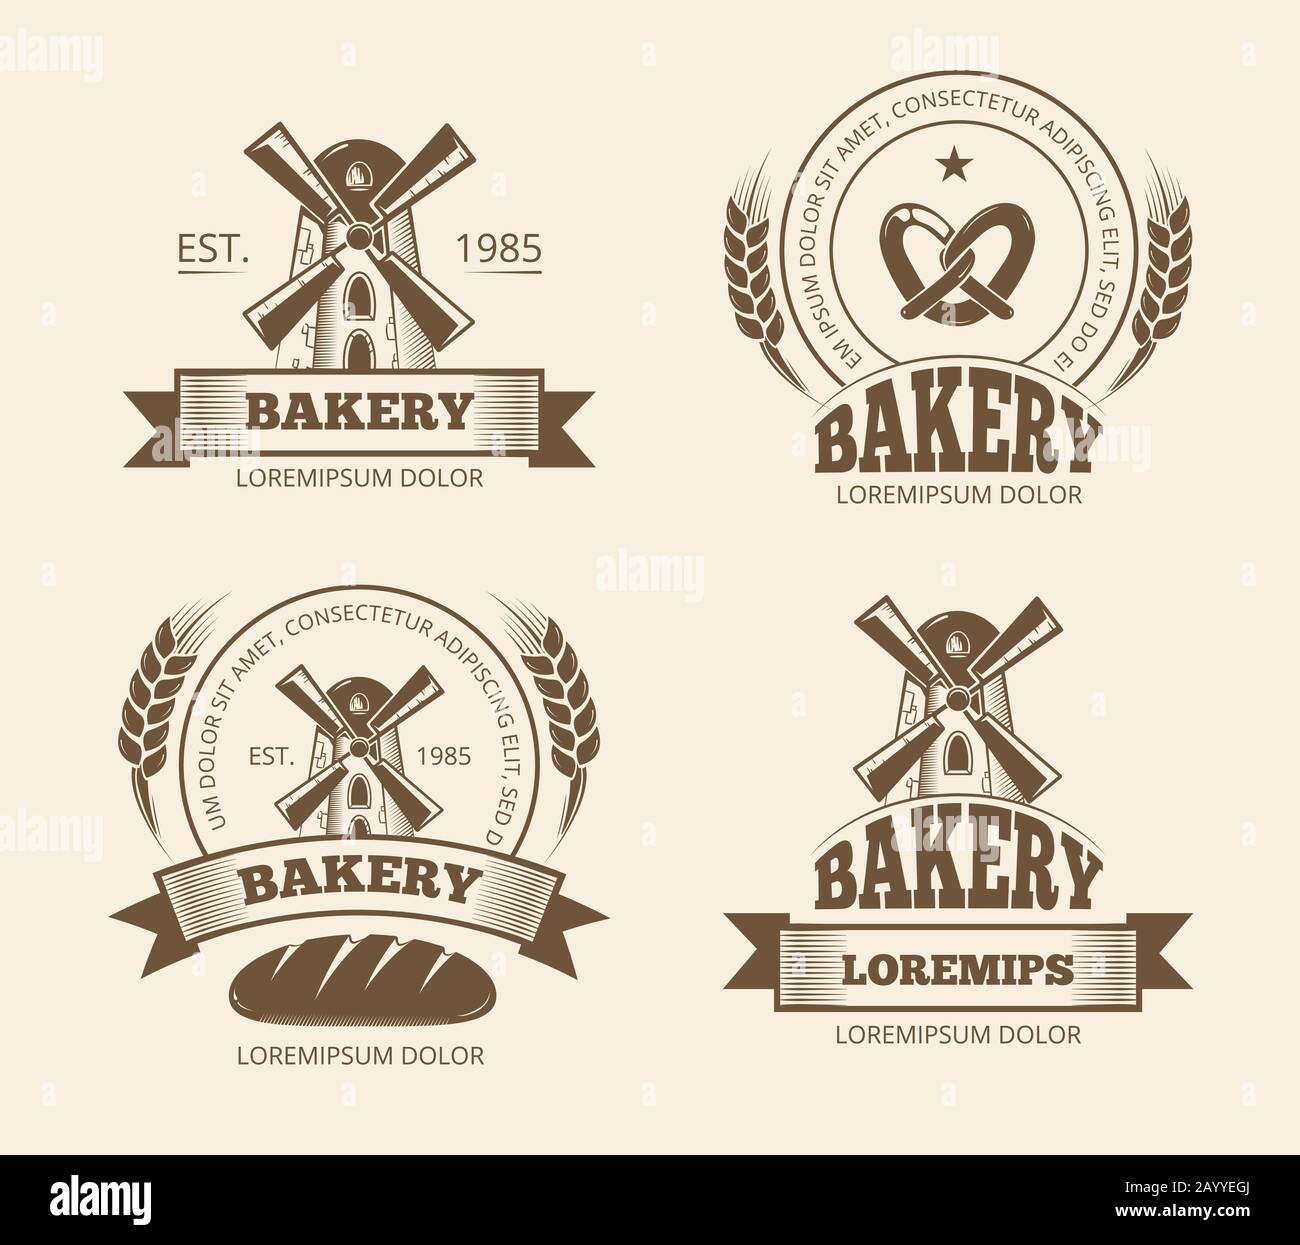 Les logos vintage de boulangerie et de pain étiquettes badges emblèmes. Logo boulangerie pour la boutique, emblème avec moulin à vent pour la boulangerie. Illustration vectorielle Illustration de Vecteur